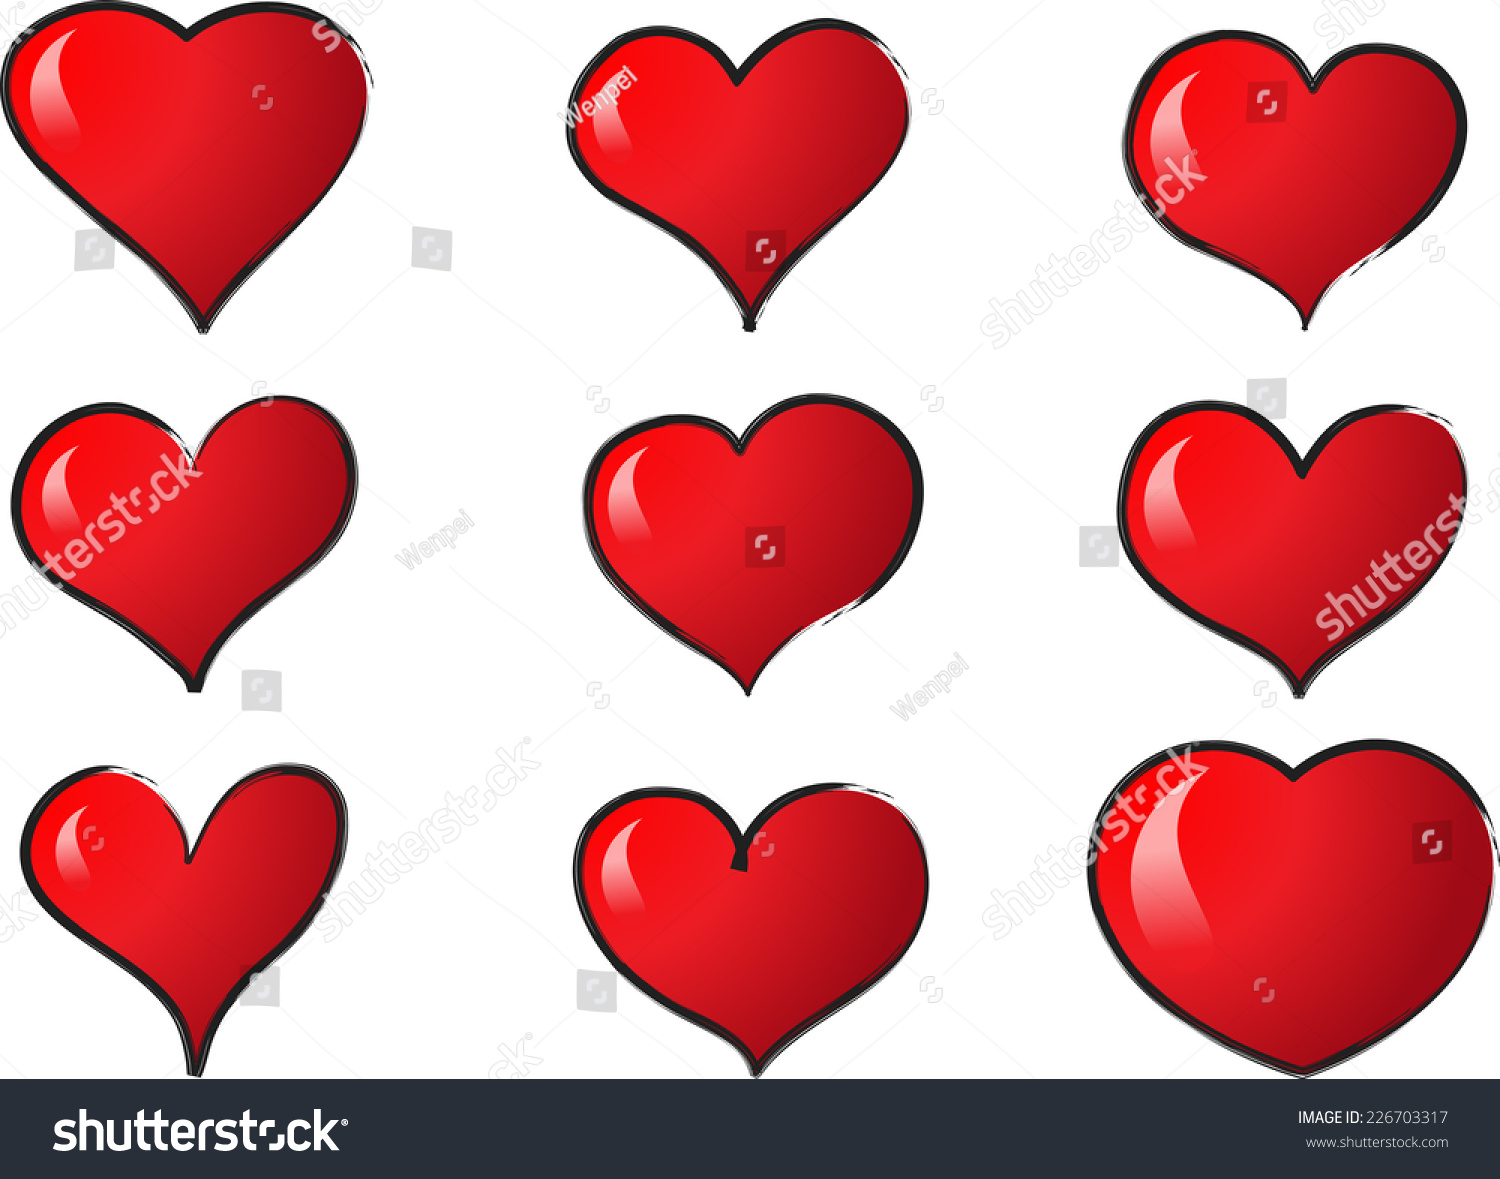 Edit Vectors Free Online - vector hearts | Shutterstock Editor